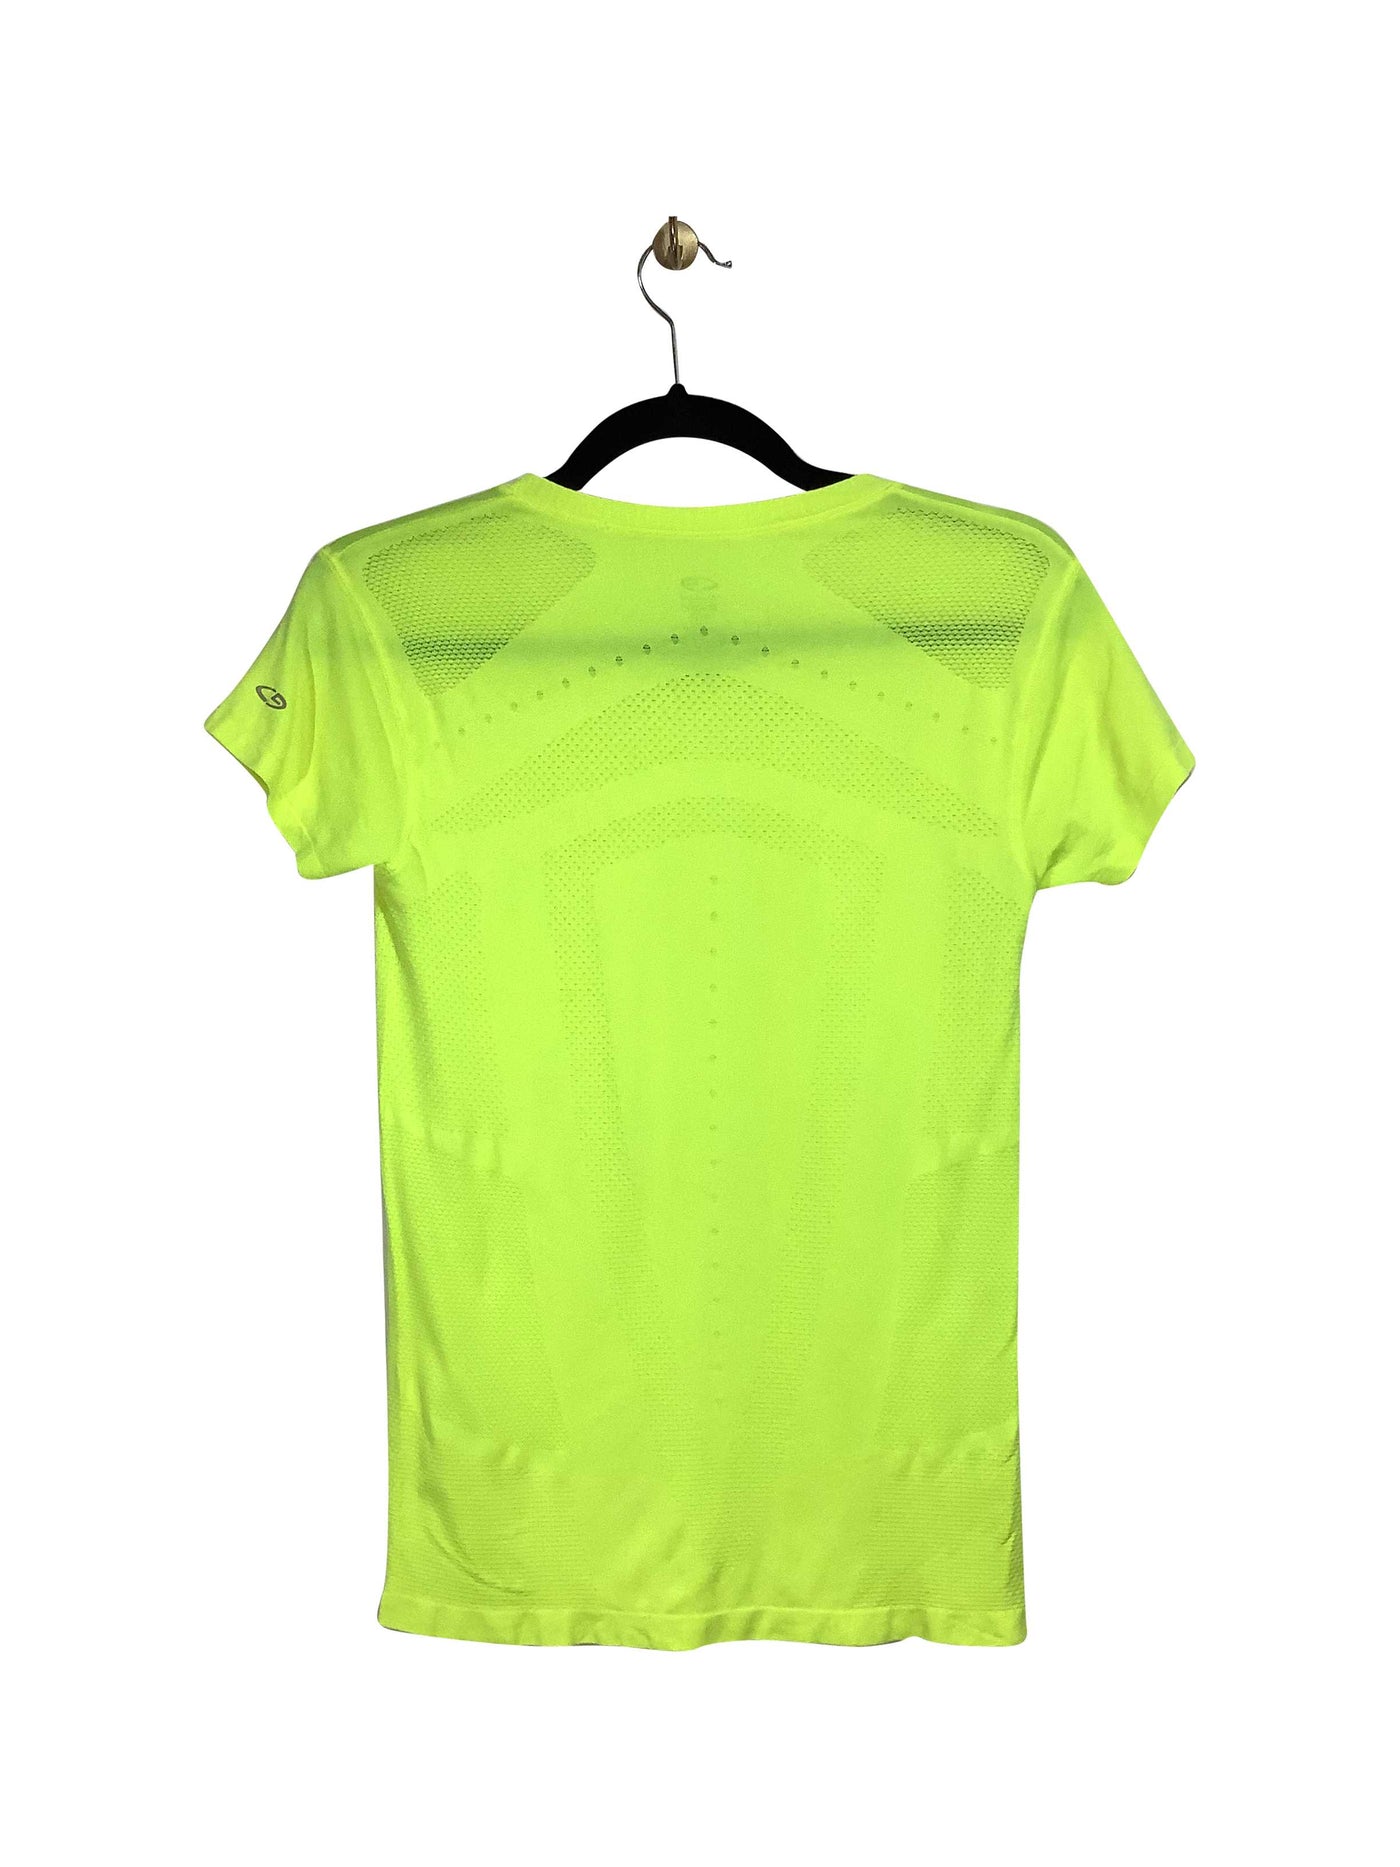 CHAMPION Regular fit Activewear Top in Yellow - Size XS | 13.49 $ KOOP